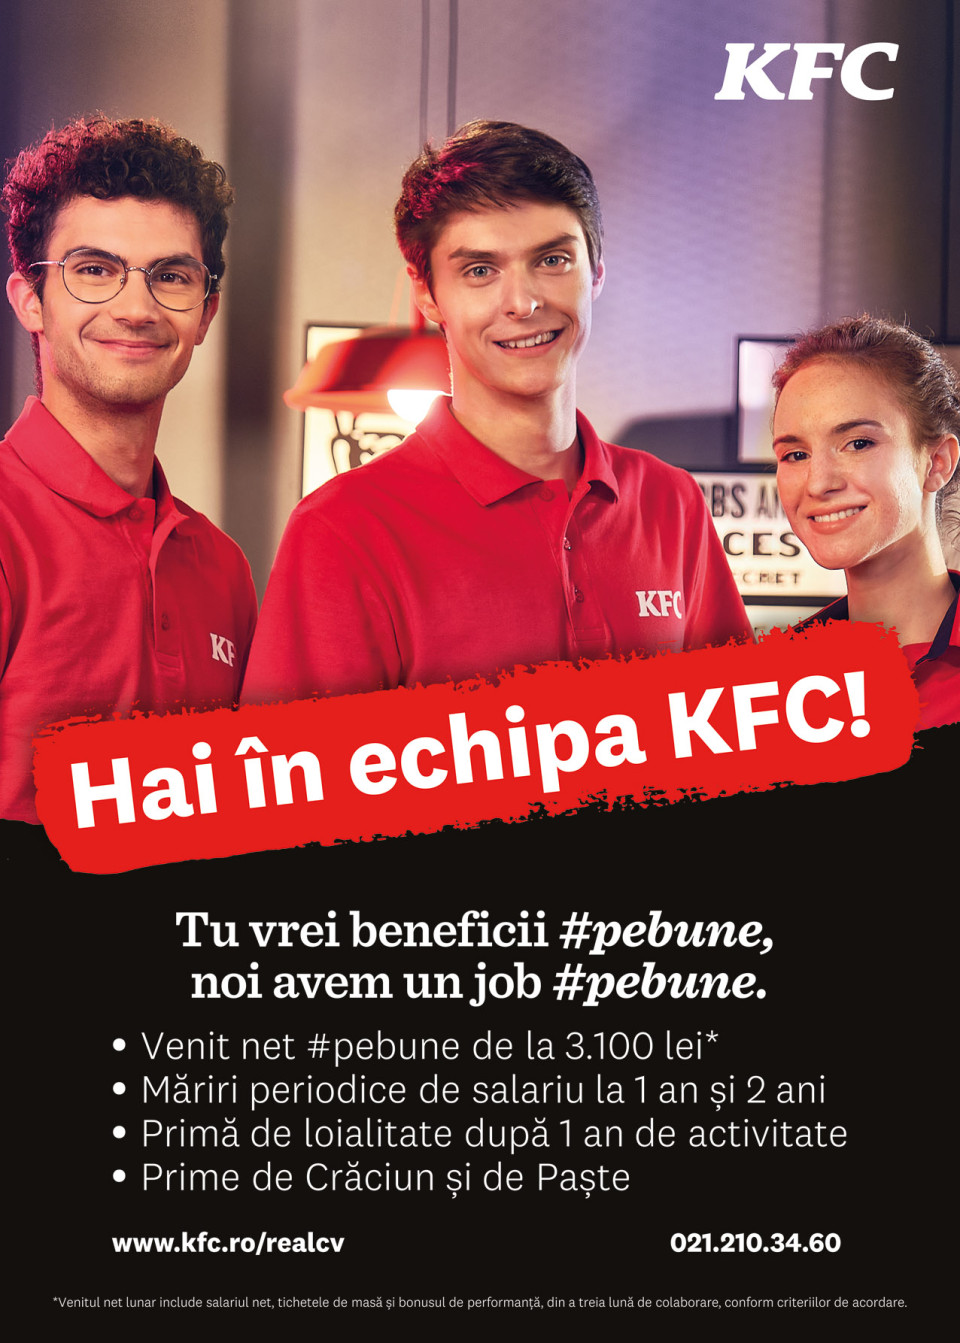 KFC cauta colegi #pebune!